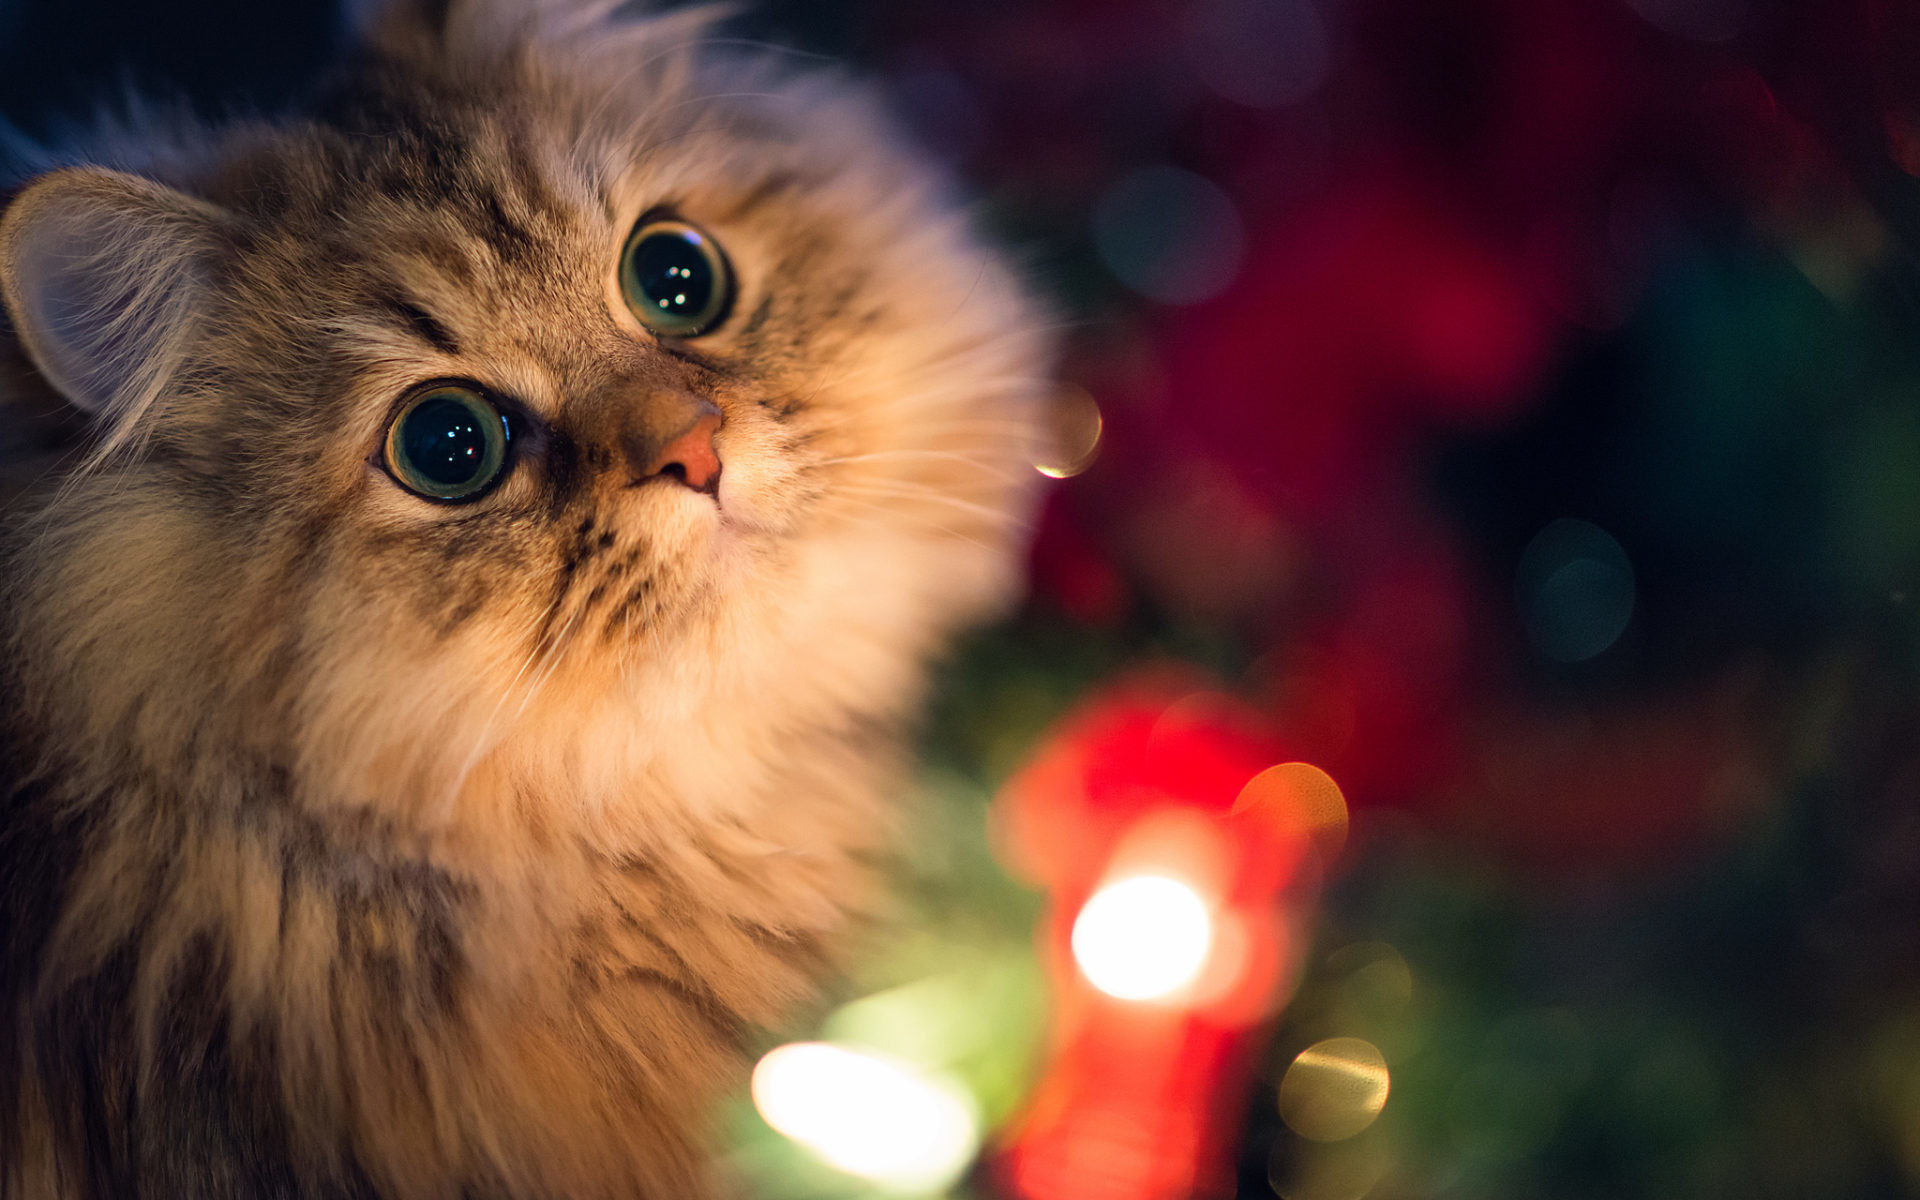 Ảnh mèo giáng sinh: Hình ảnh của những chú mèo đang cất lên câu chúc giáng sinh sẽ làm cho người xem cười và thích thú. Những hình ảnh mèo giáng sinh đáng yêu là điều không thể bỏ qua trong mùa lễ hội này.